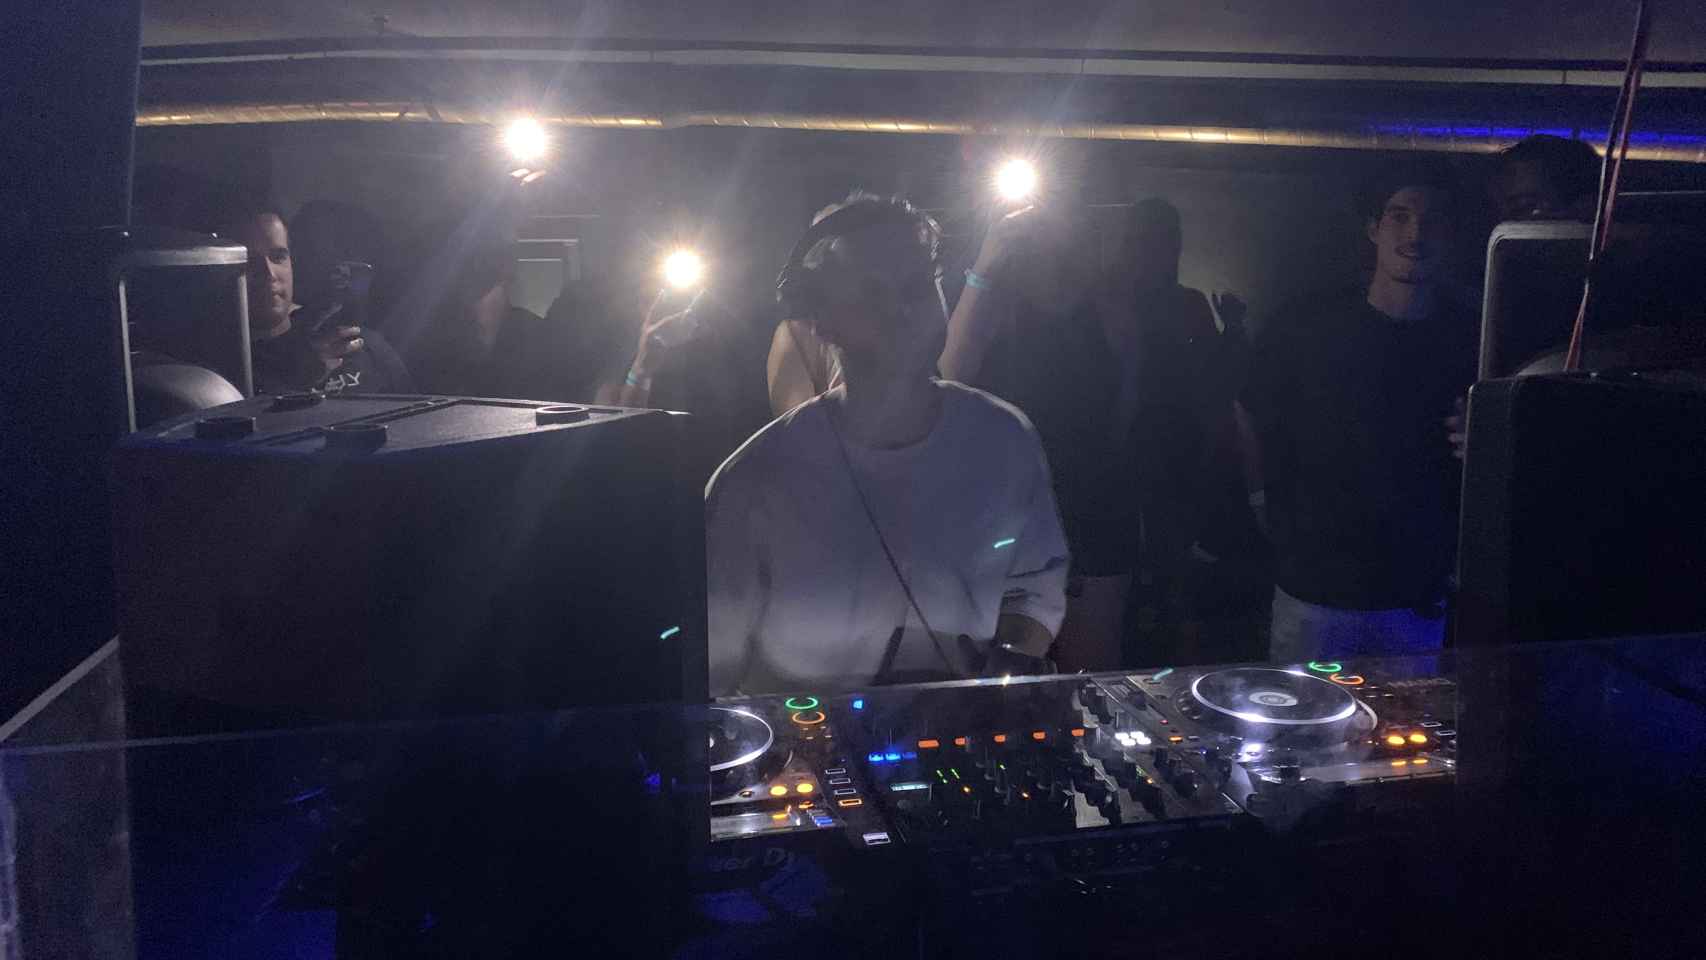 Un DJ pincha música electrónica en una discoteca. Tras él, un reservado abarrotado.